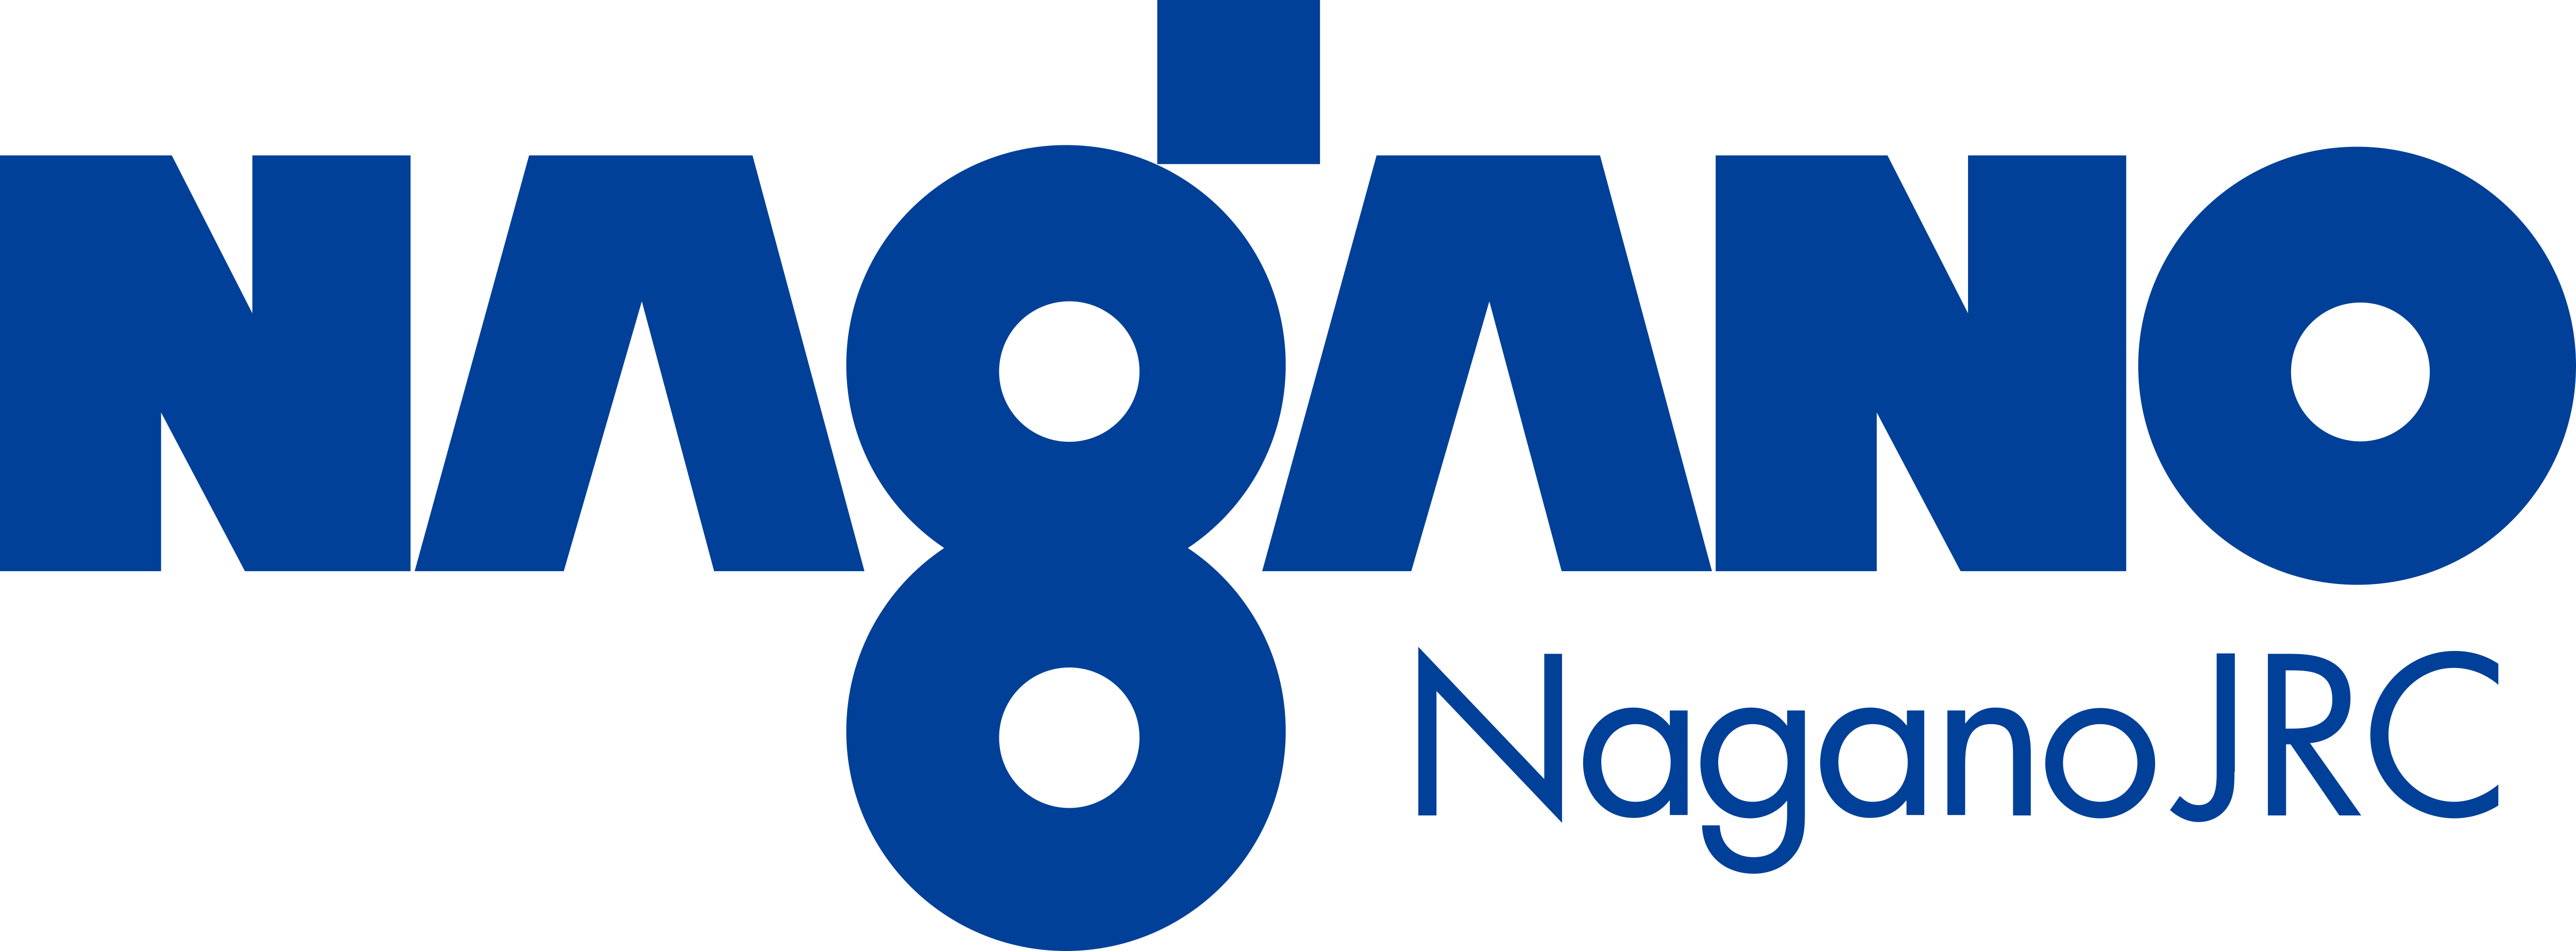 Nagano Japan Radio Co. – Logos Download